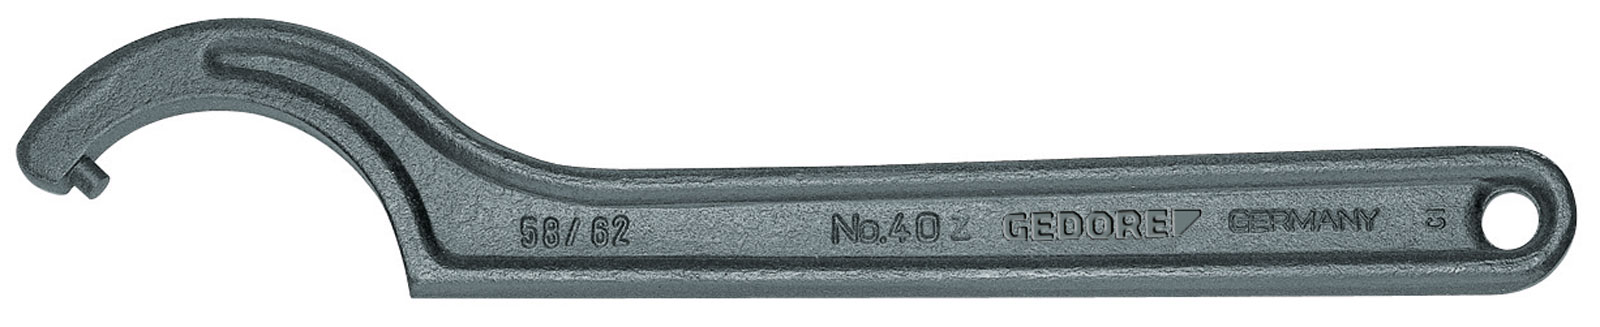 Bild von 40 Z 120-130 Hakenschlüssel, DIN 1810 Form B, 120-130 mm